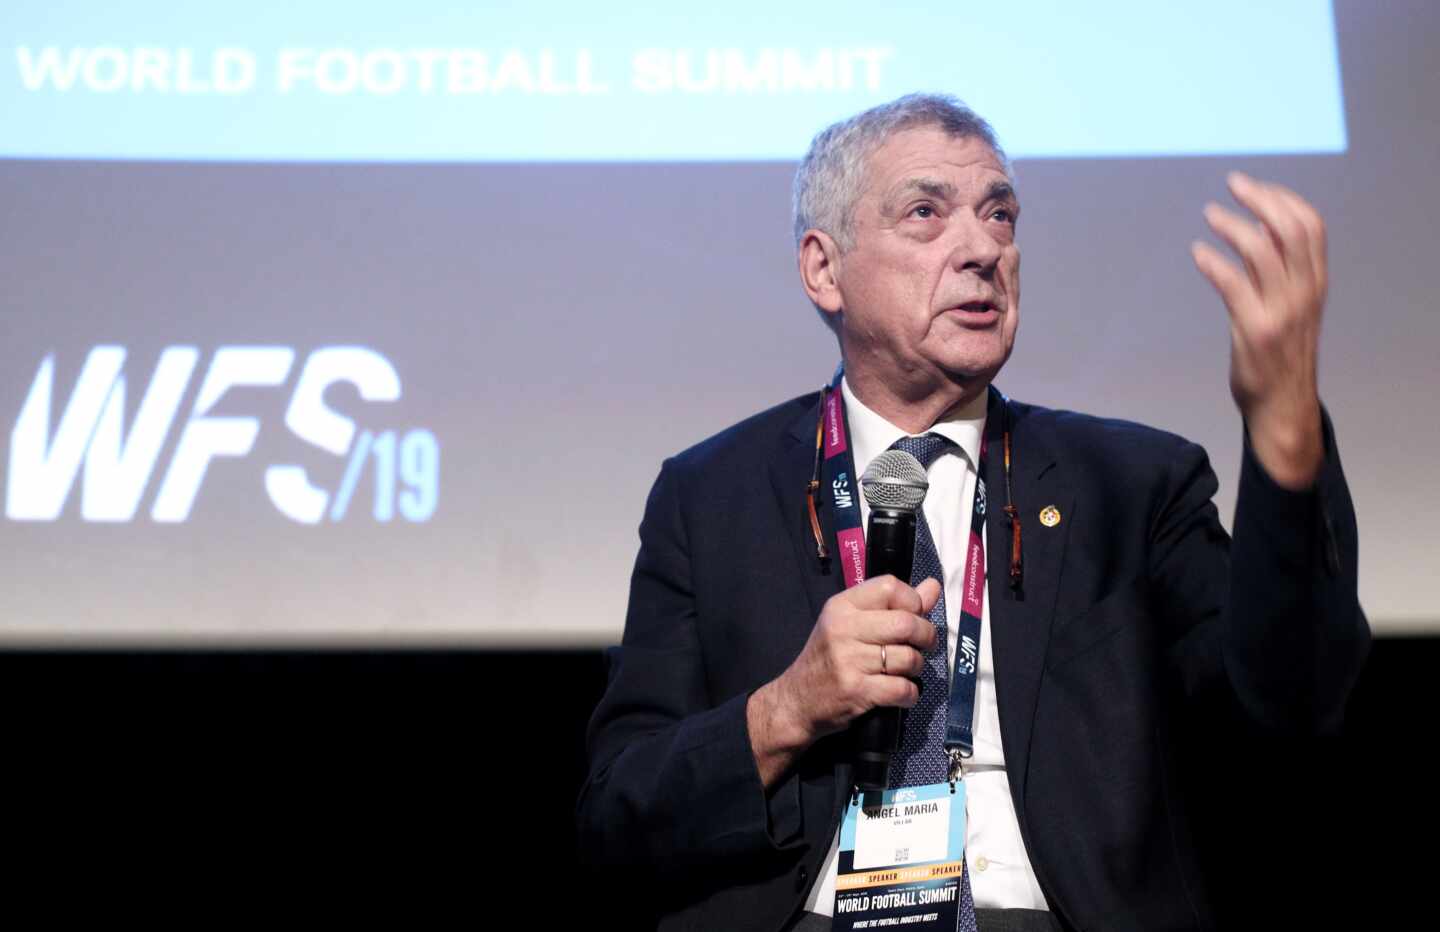 El ex presidente de la Federación Española de Fútbol (RFEF) Ángel María Villar, durante una ponencia.